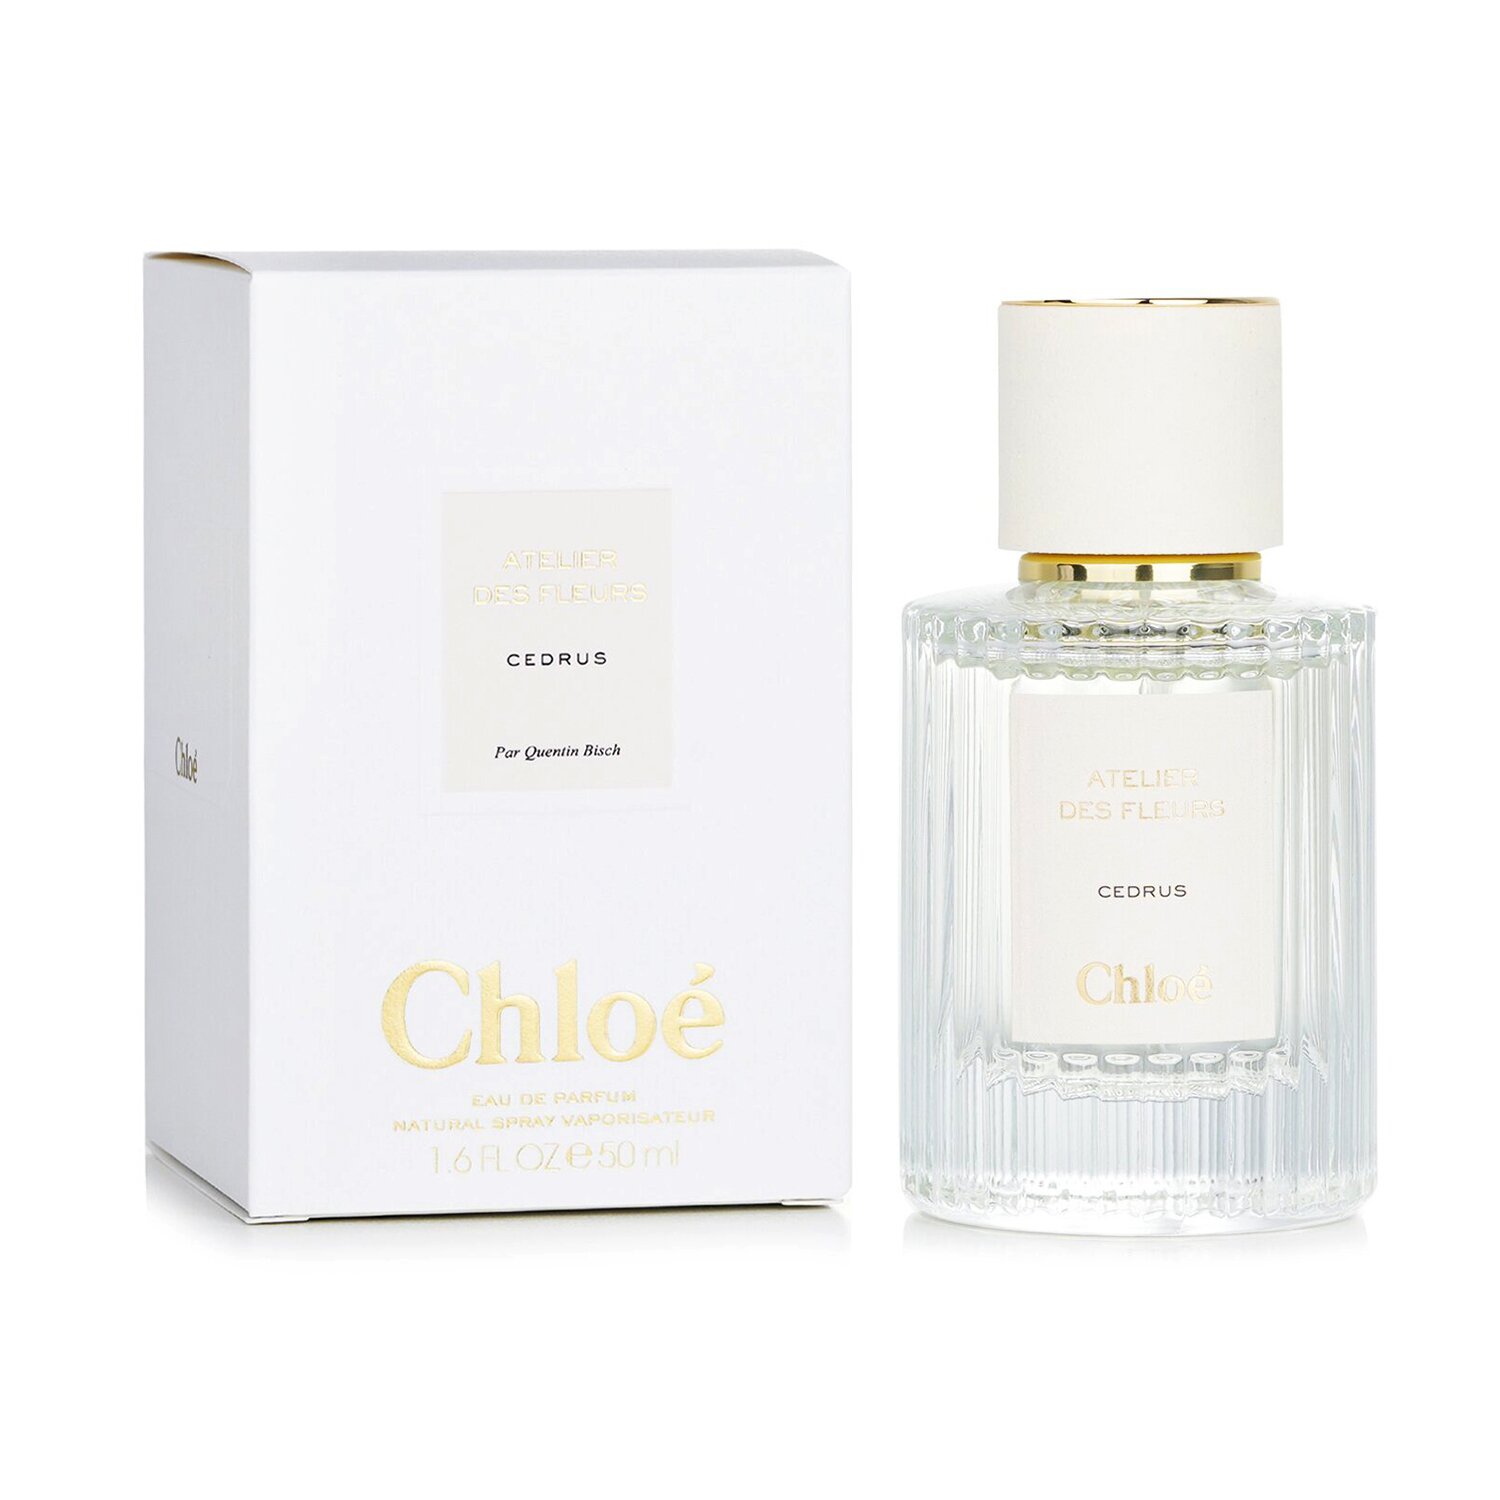 Chloe Atelier Des Fleurs Cedrus Eau De Parfum Spray 50ml/1.7oz